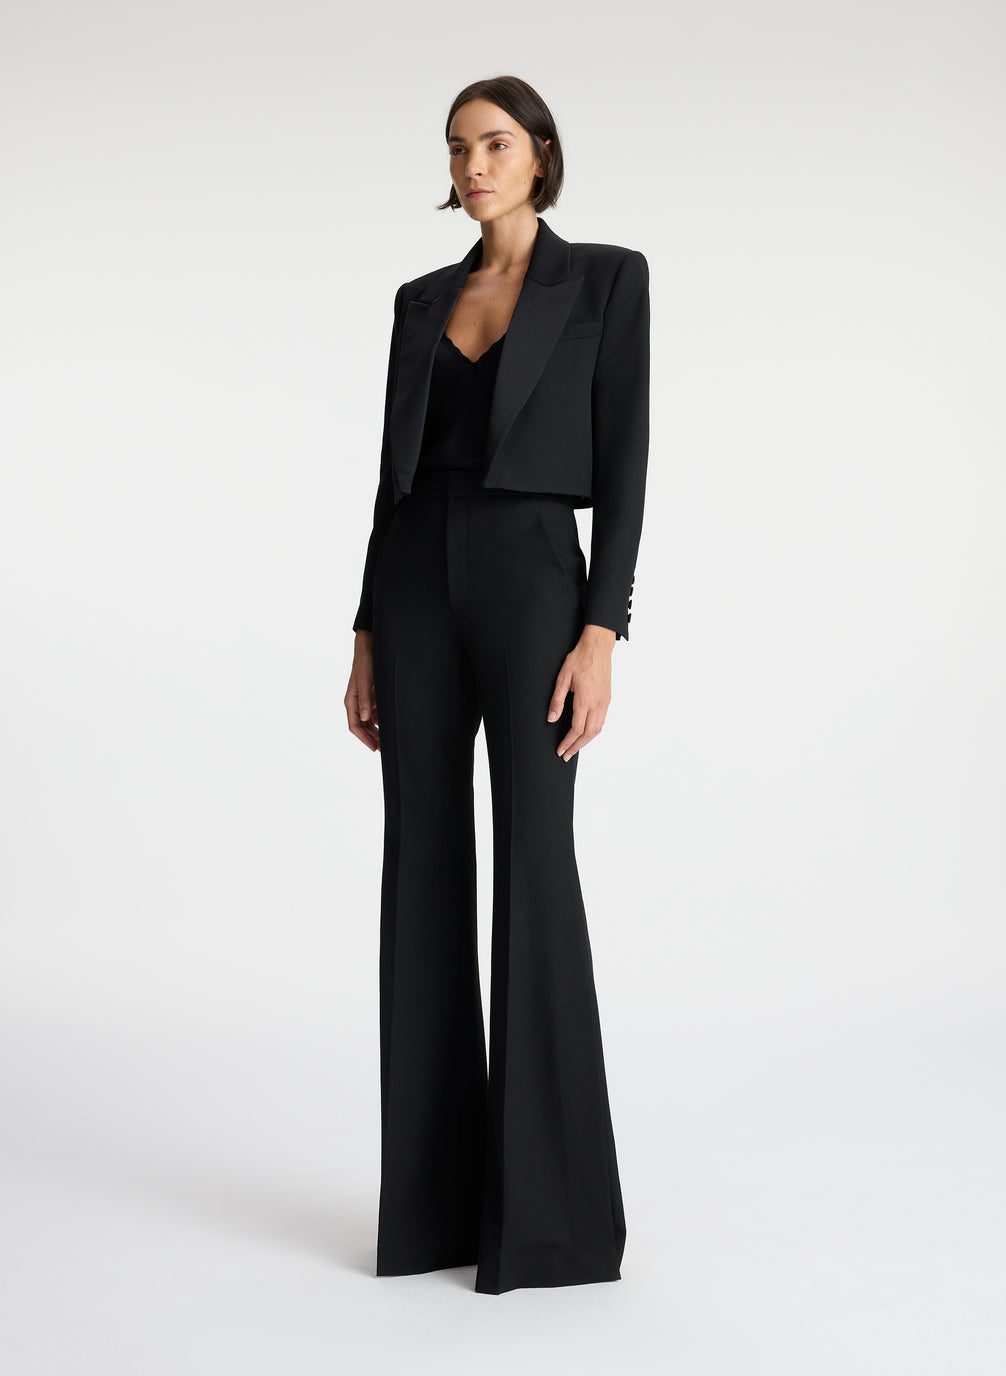 Extravagant linen pant suit for women in black